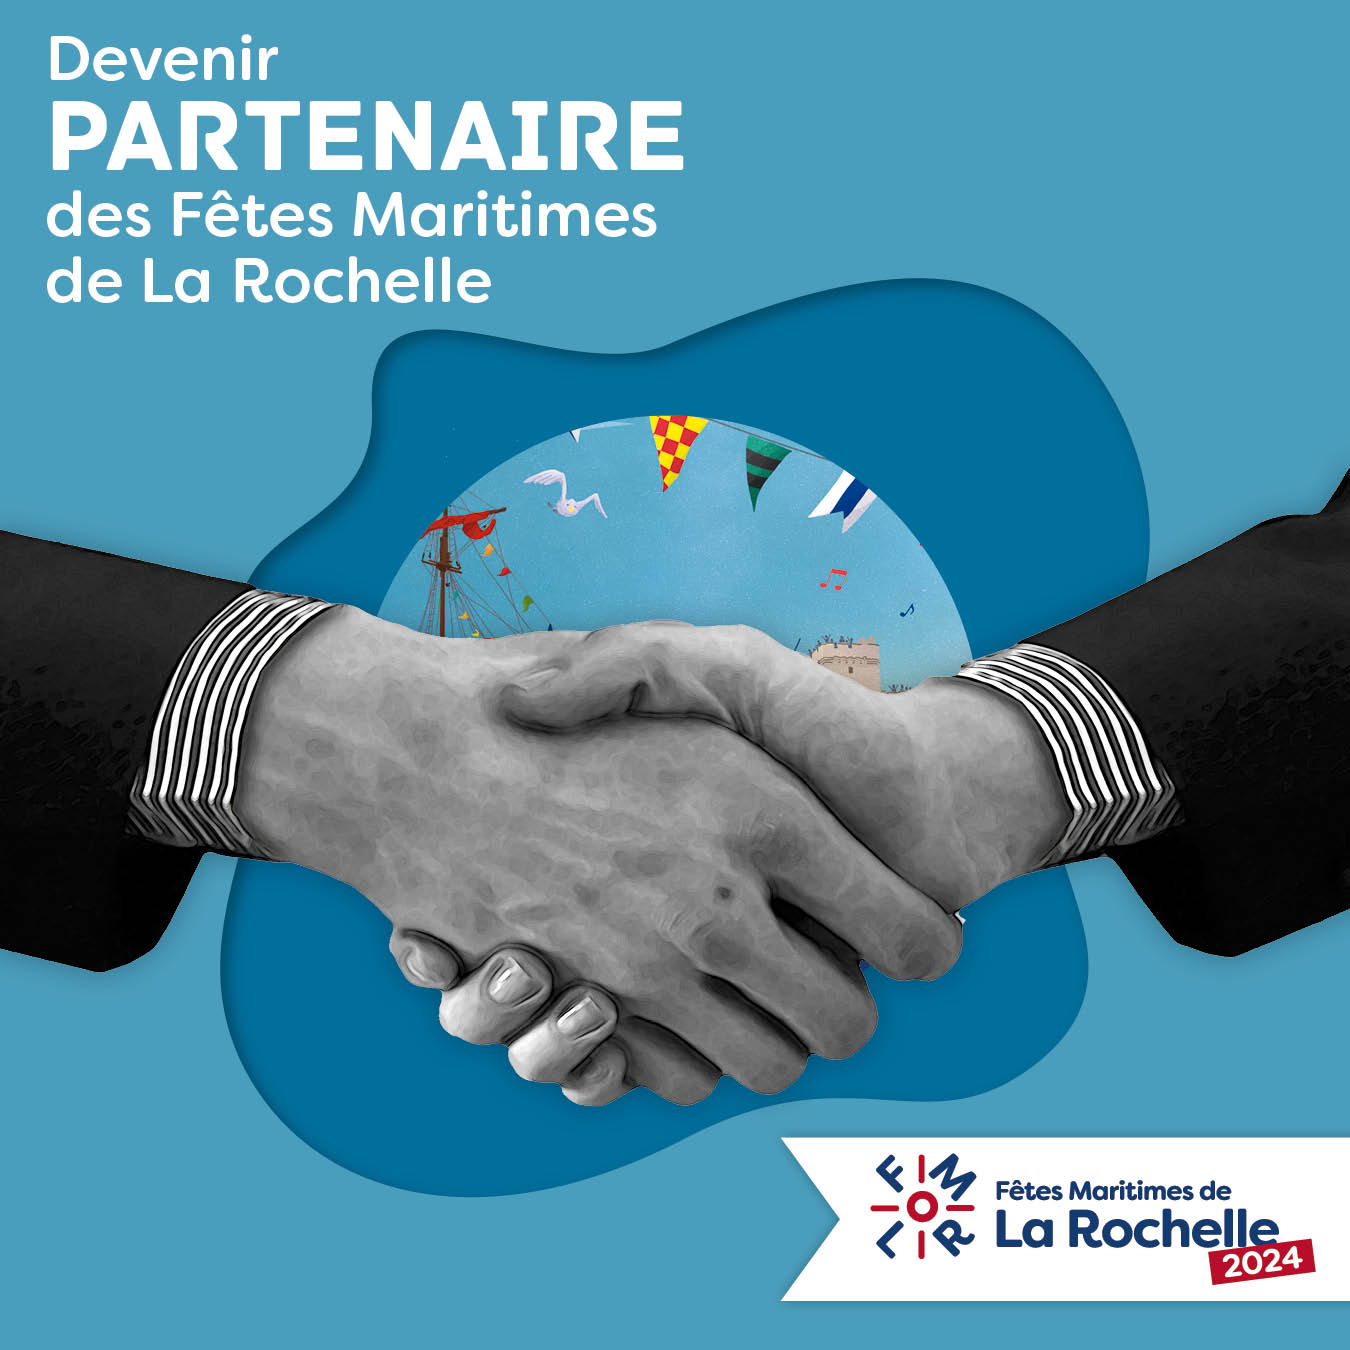 Devenir partenaire des Fêtes Maritimes de La Rochelle 2024